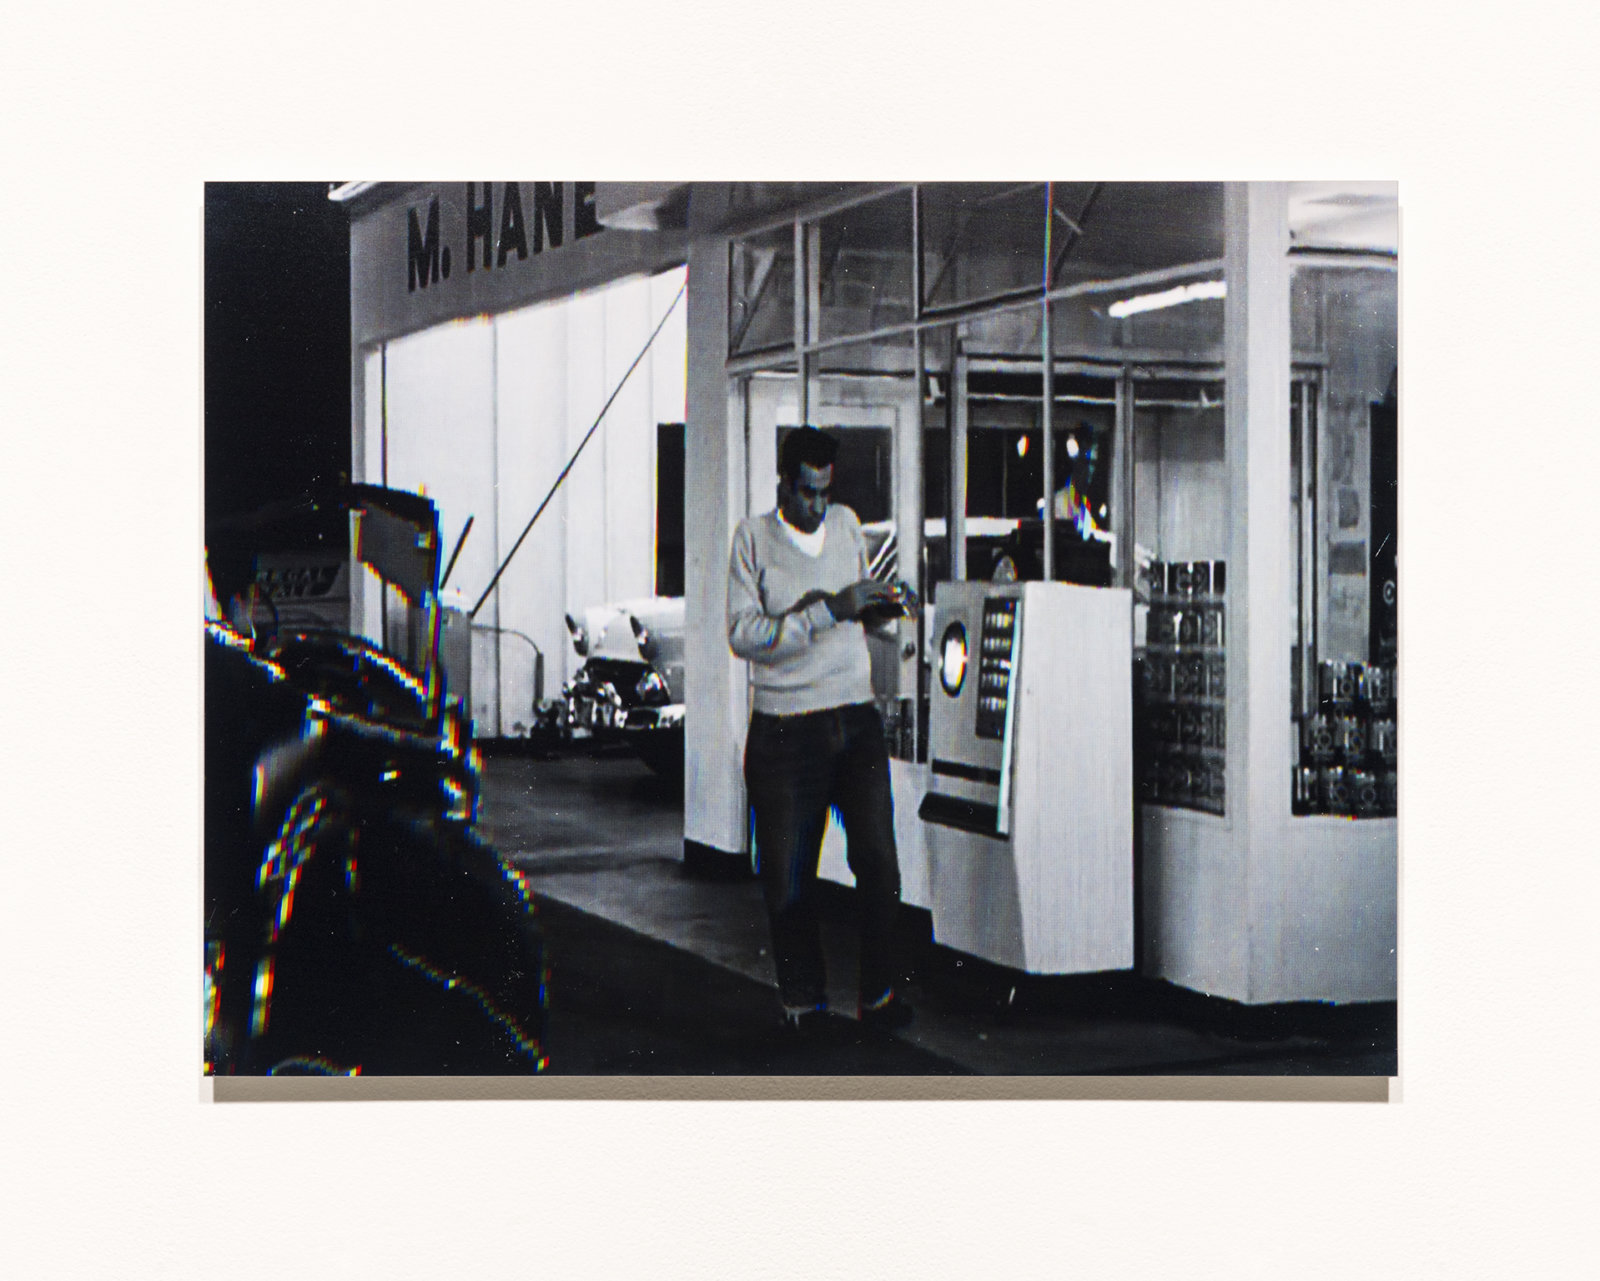 Raymond Boisjoly, Station to Station, 2014, 6 screen resolution lightjet print mounted on dibond, each 18 x 24 in. (46 x 61 cm)